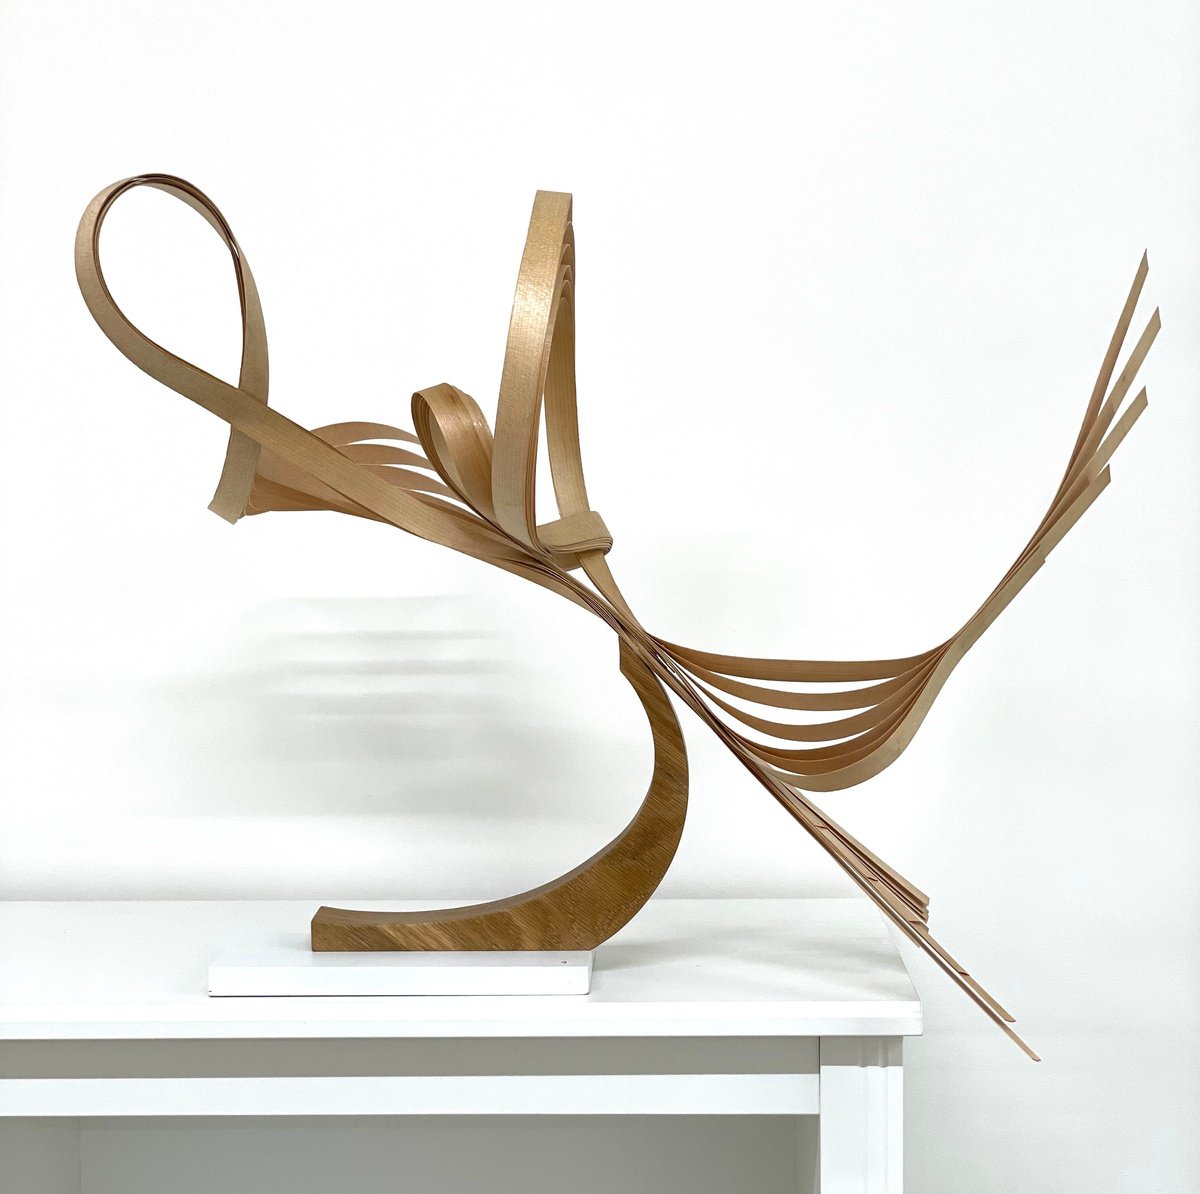 Wood Veneer Sculpture Series 1.1 by Mark Purllant